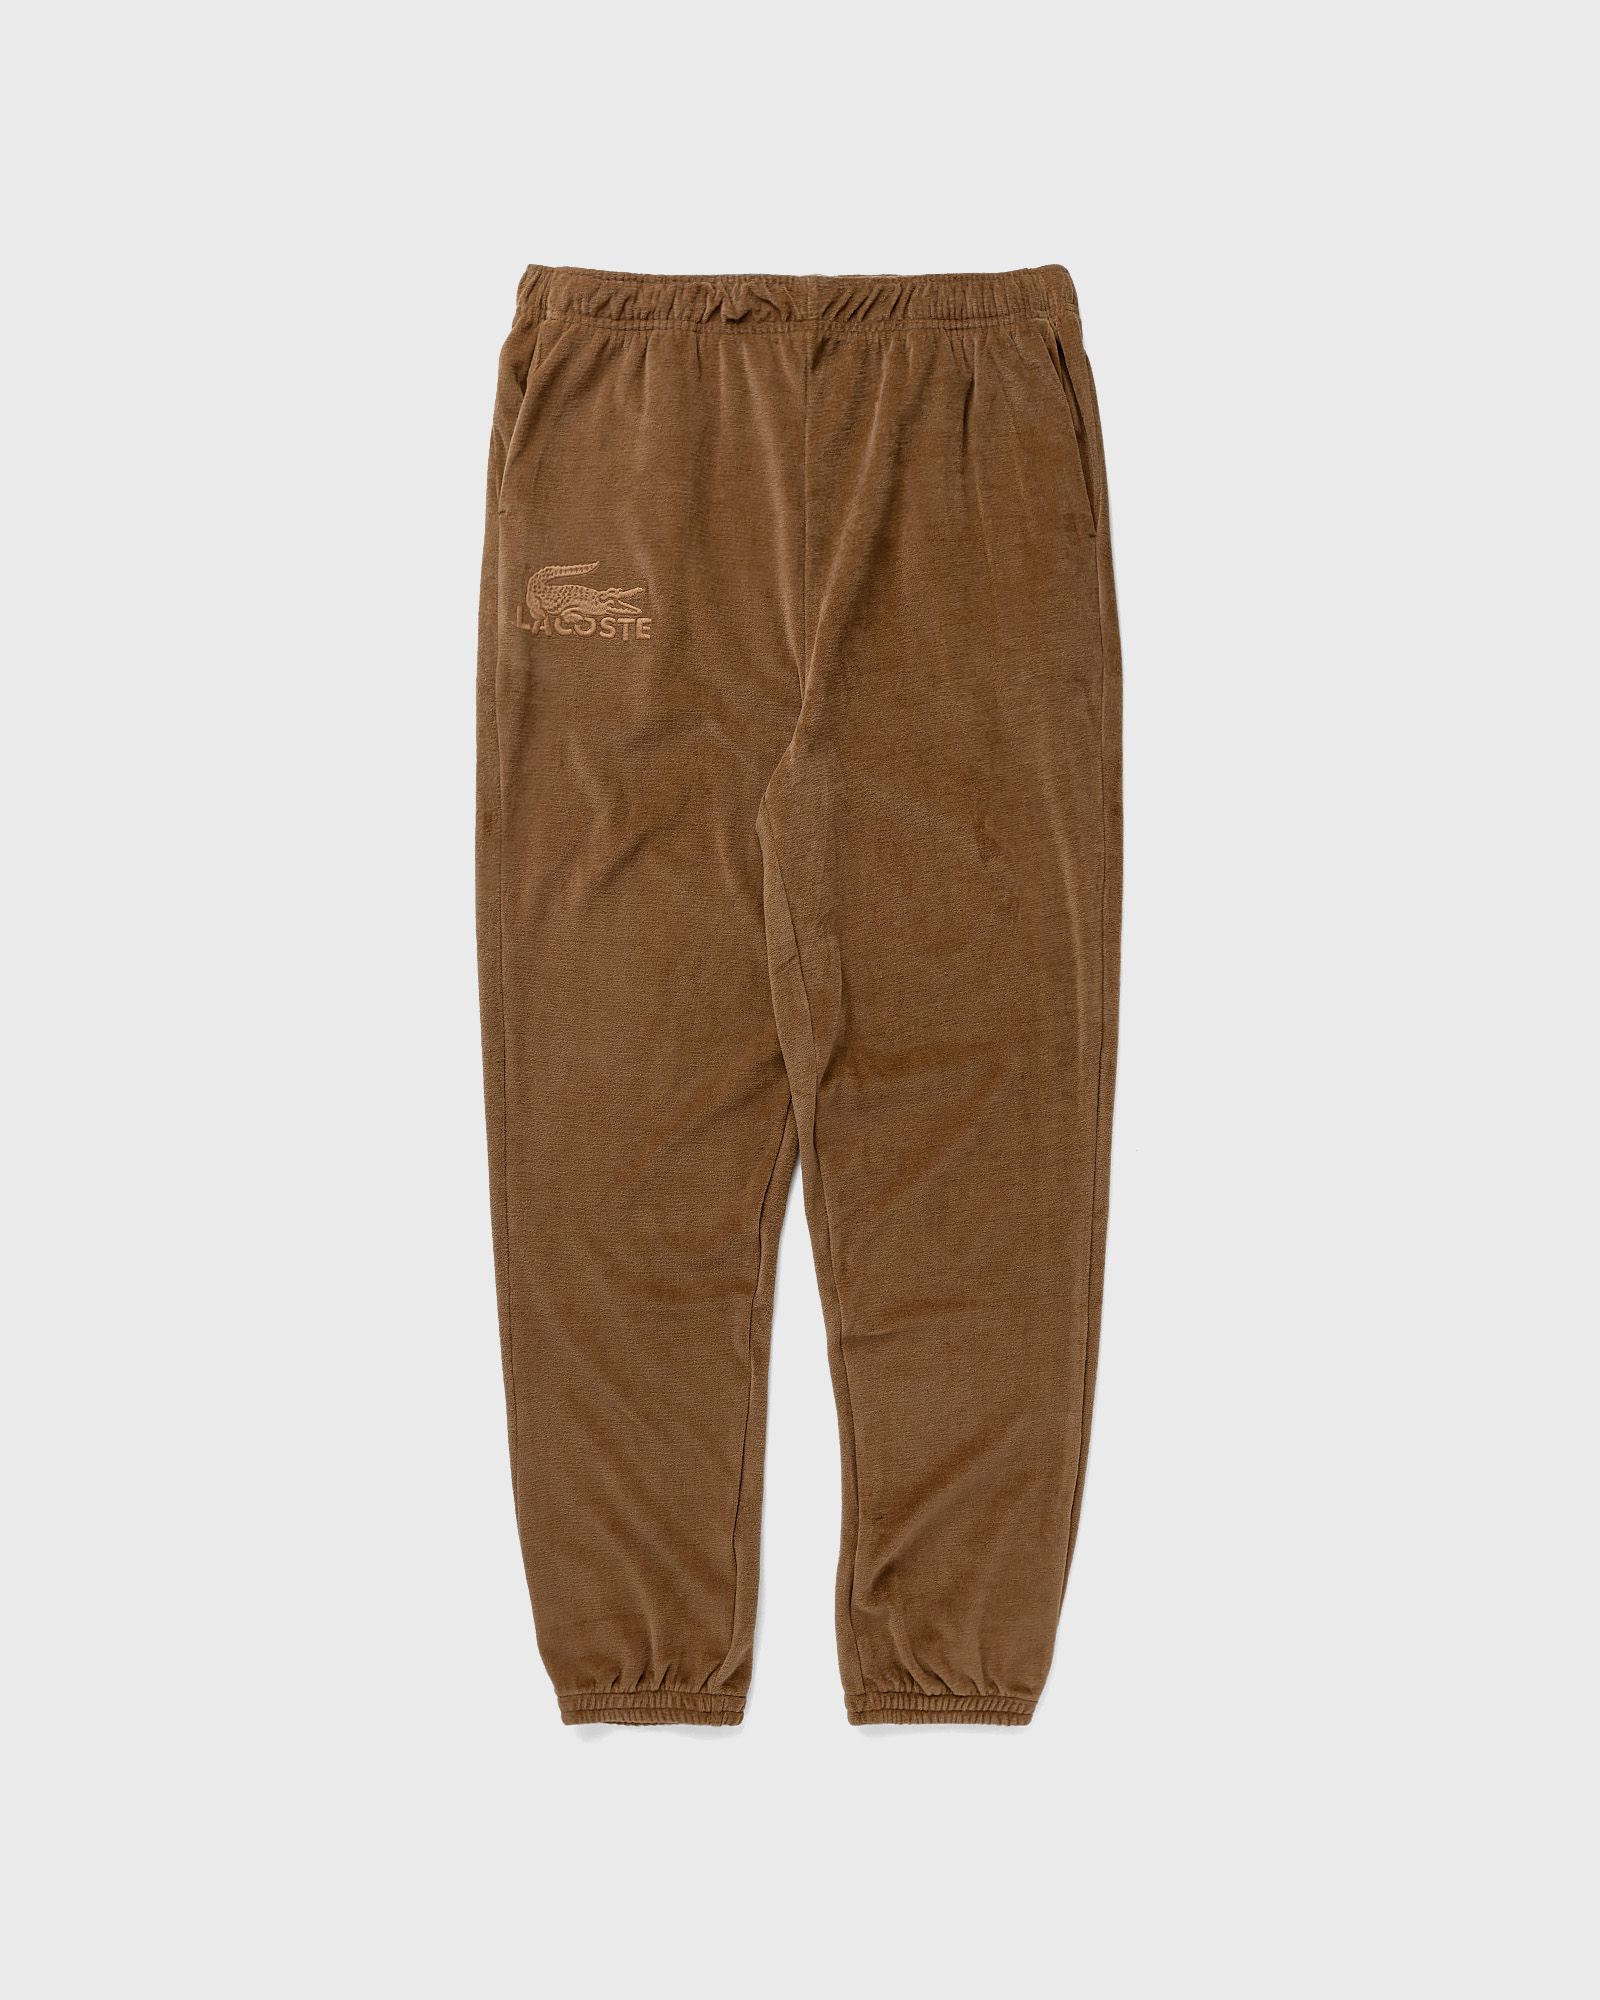 Lacoste - loungewear pyjama pants men sleep- & loungewear brown in größe:xxl